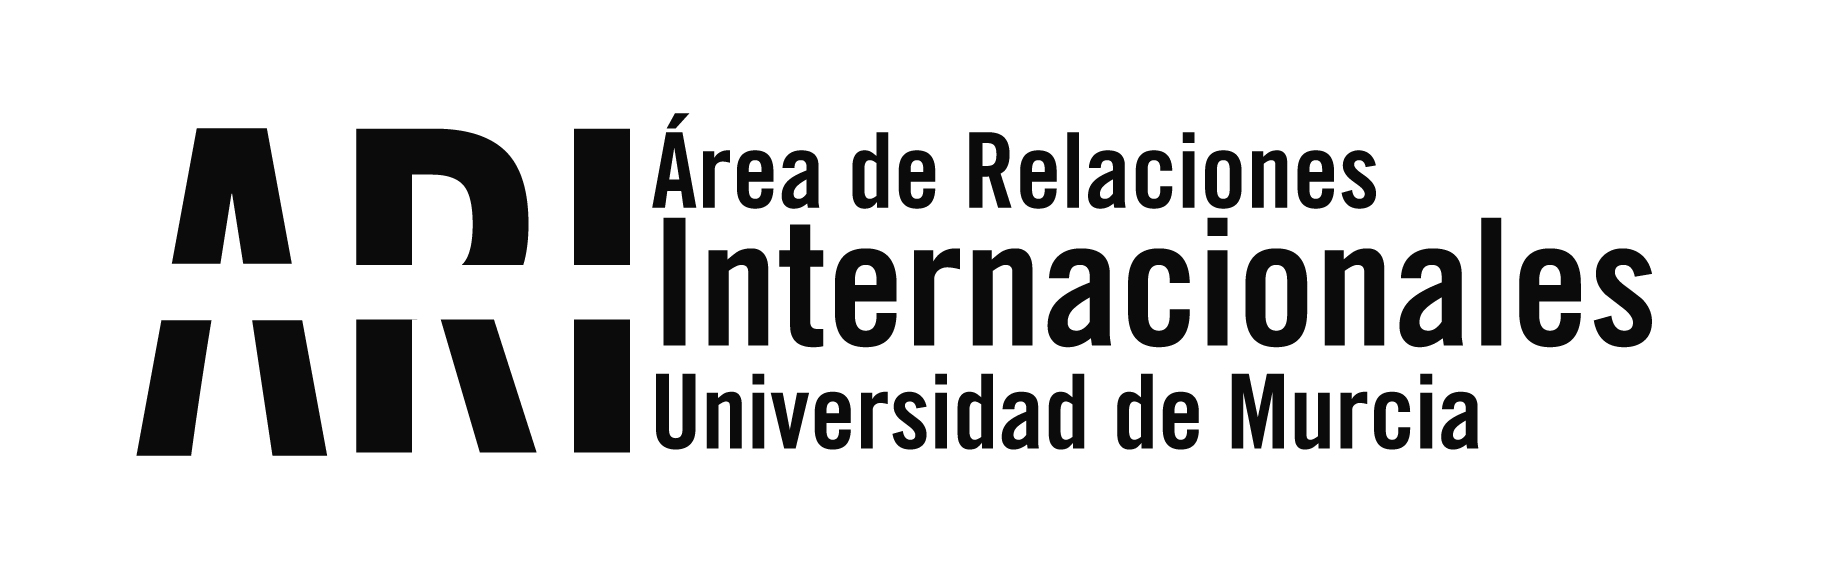 Boletín/Newsletter nº8 del Vicerrectorado de Internacionalización de la Universidad de Murcia del lunes 17 de septiembre de 2018 - Área de Relaciones Internacionales